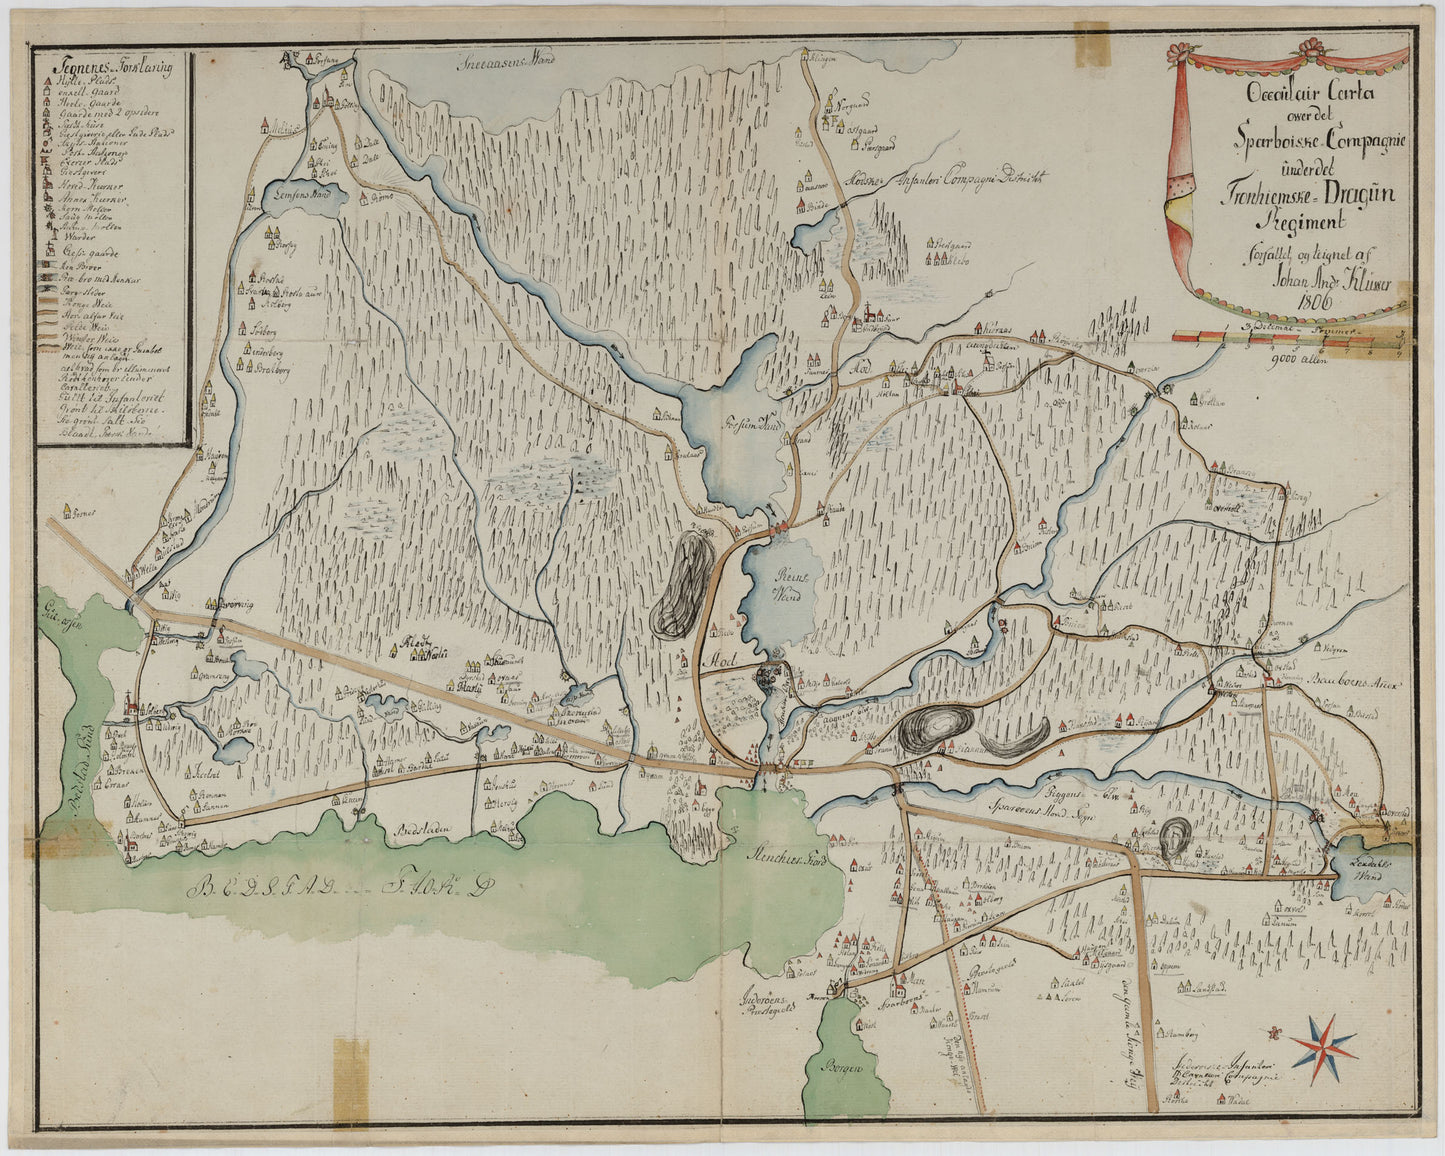 Kartblad 186: Oculair Carta over det Sparboiske Compagnie: Nord-Trøndelag